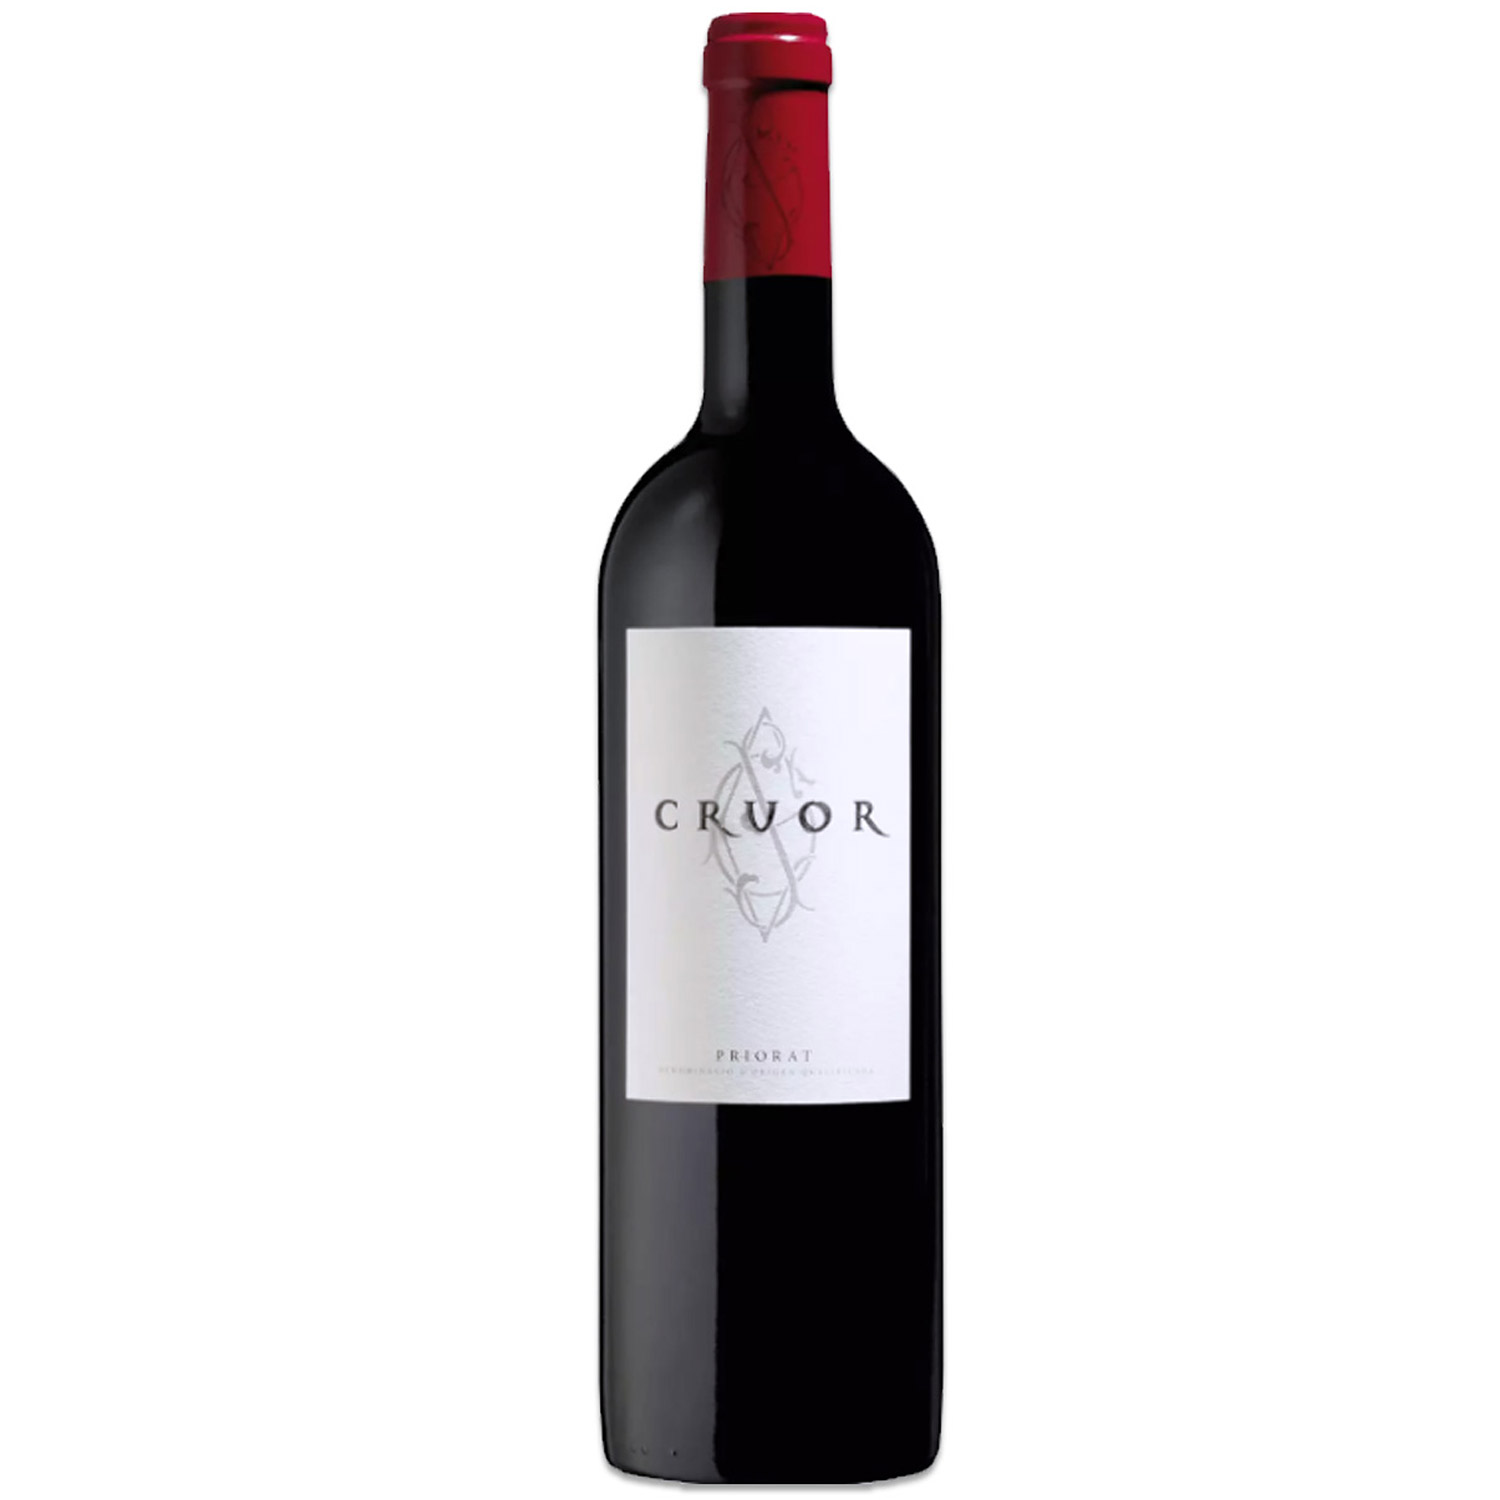 Spanischer Rotwein Priorat Cruor 2016